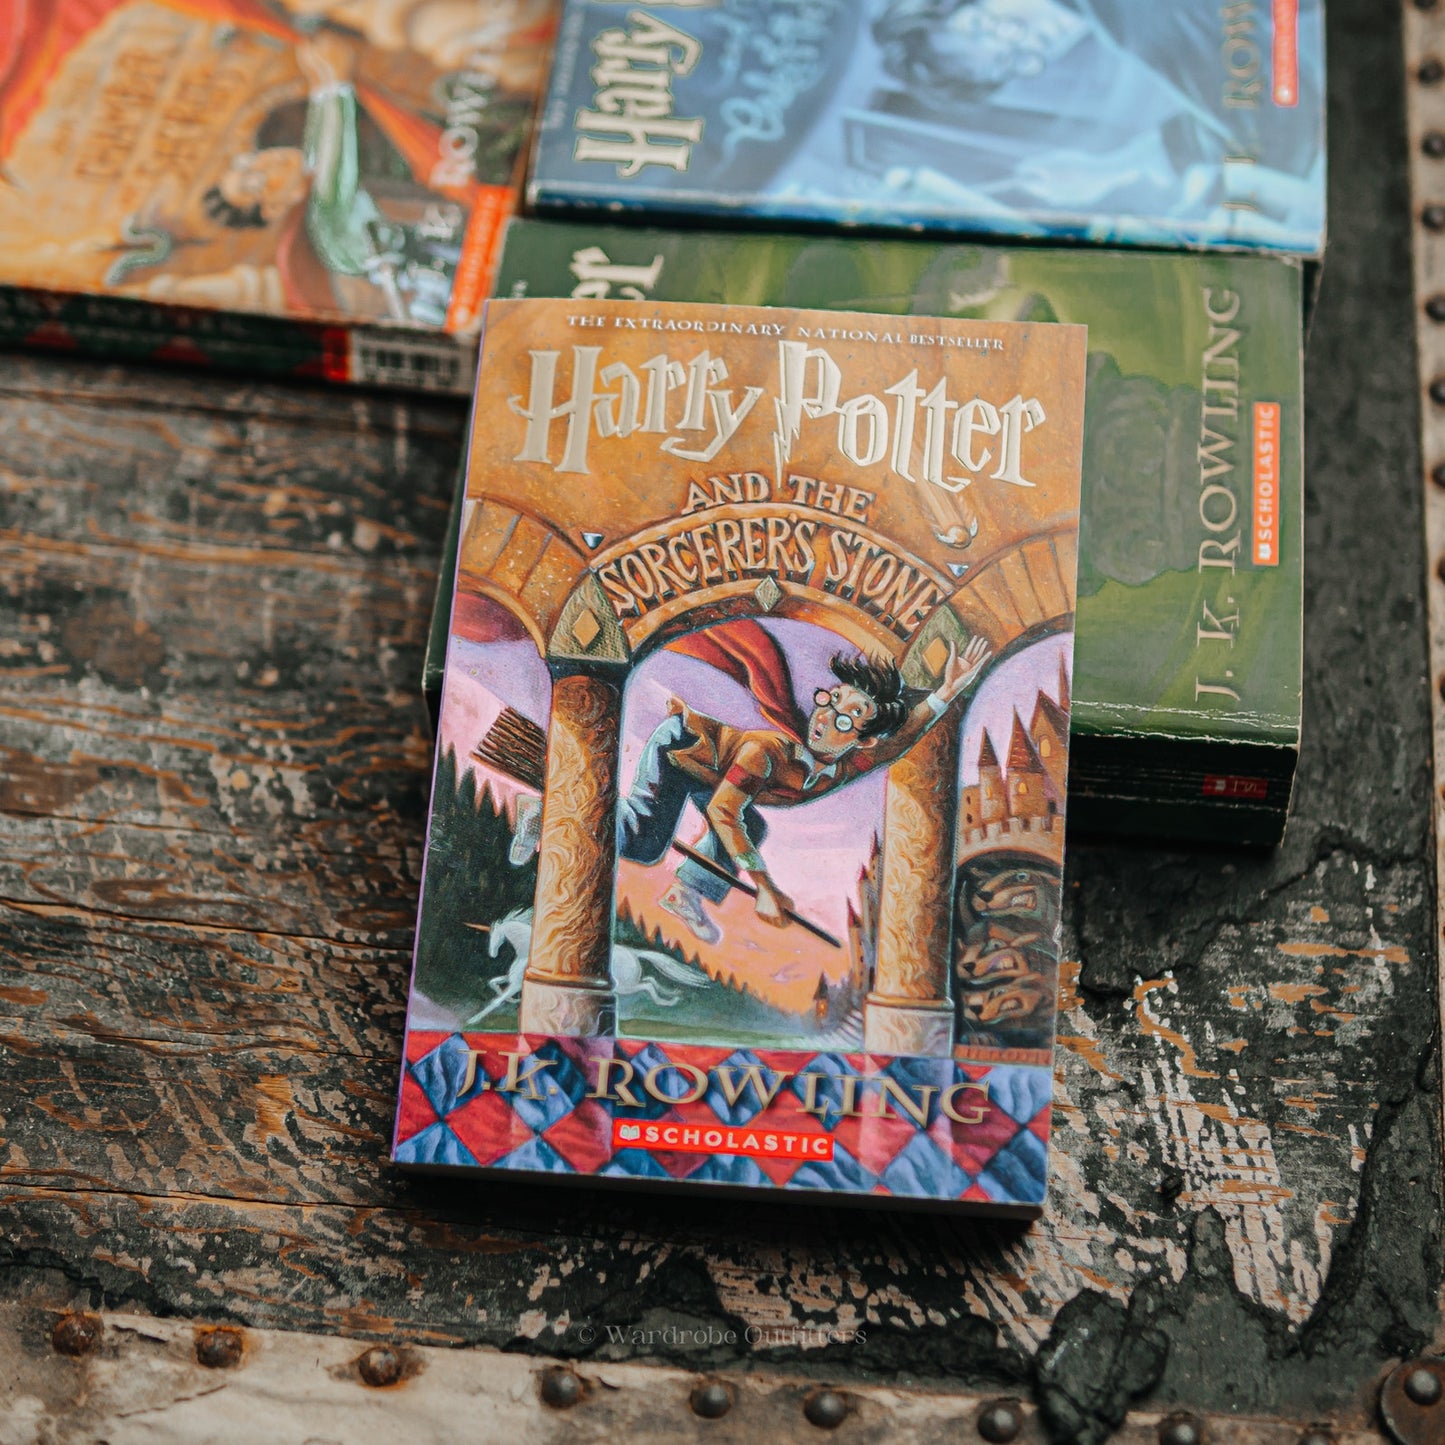 Harry Potter Paperback Set by J. K. Rowling (Books 1-7)